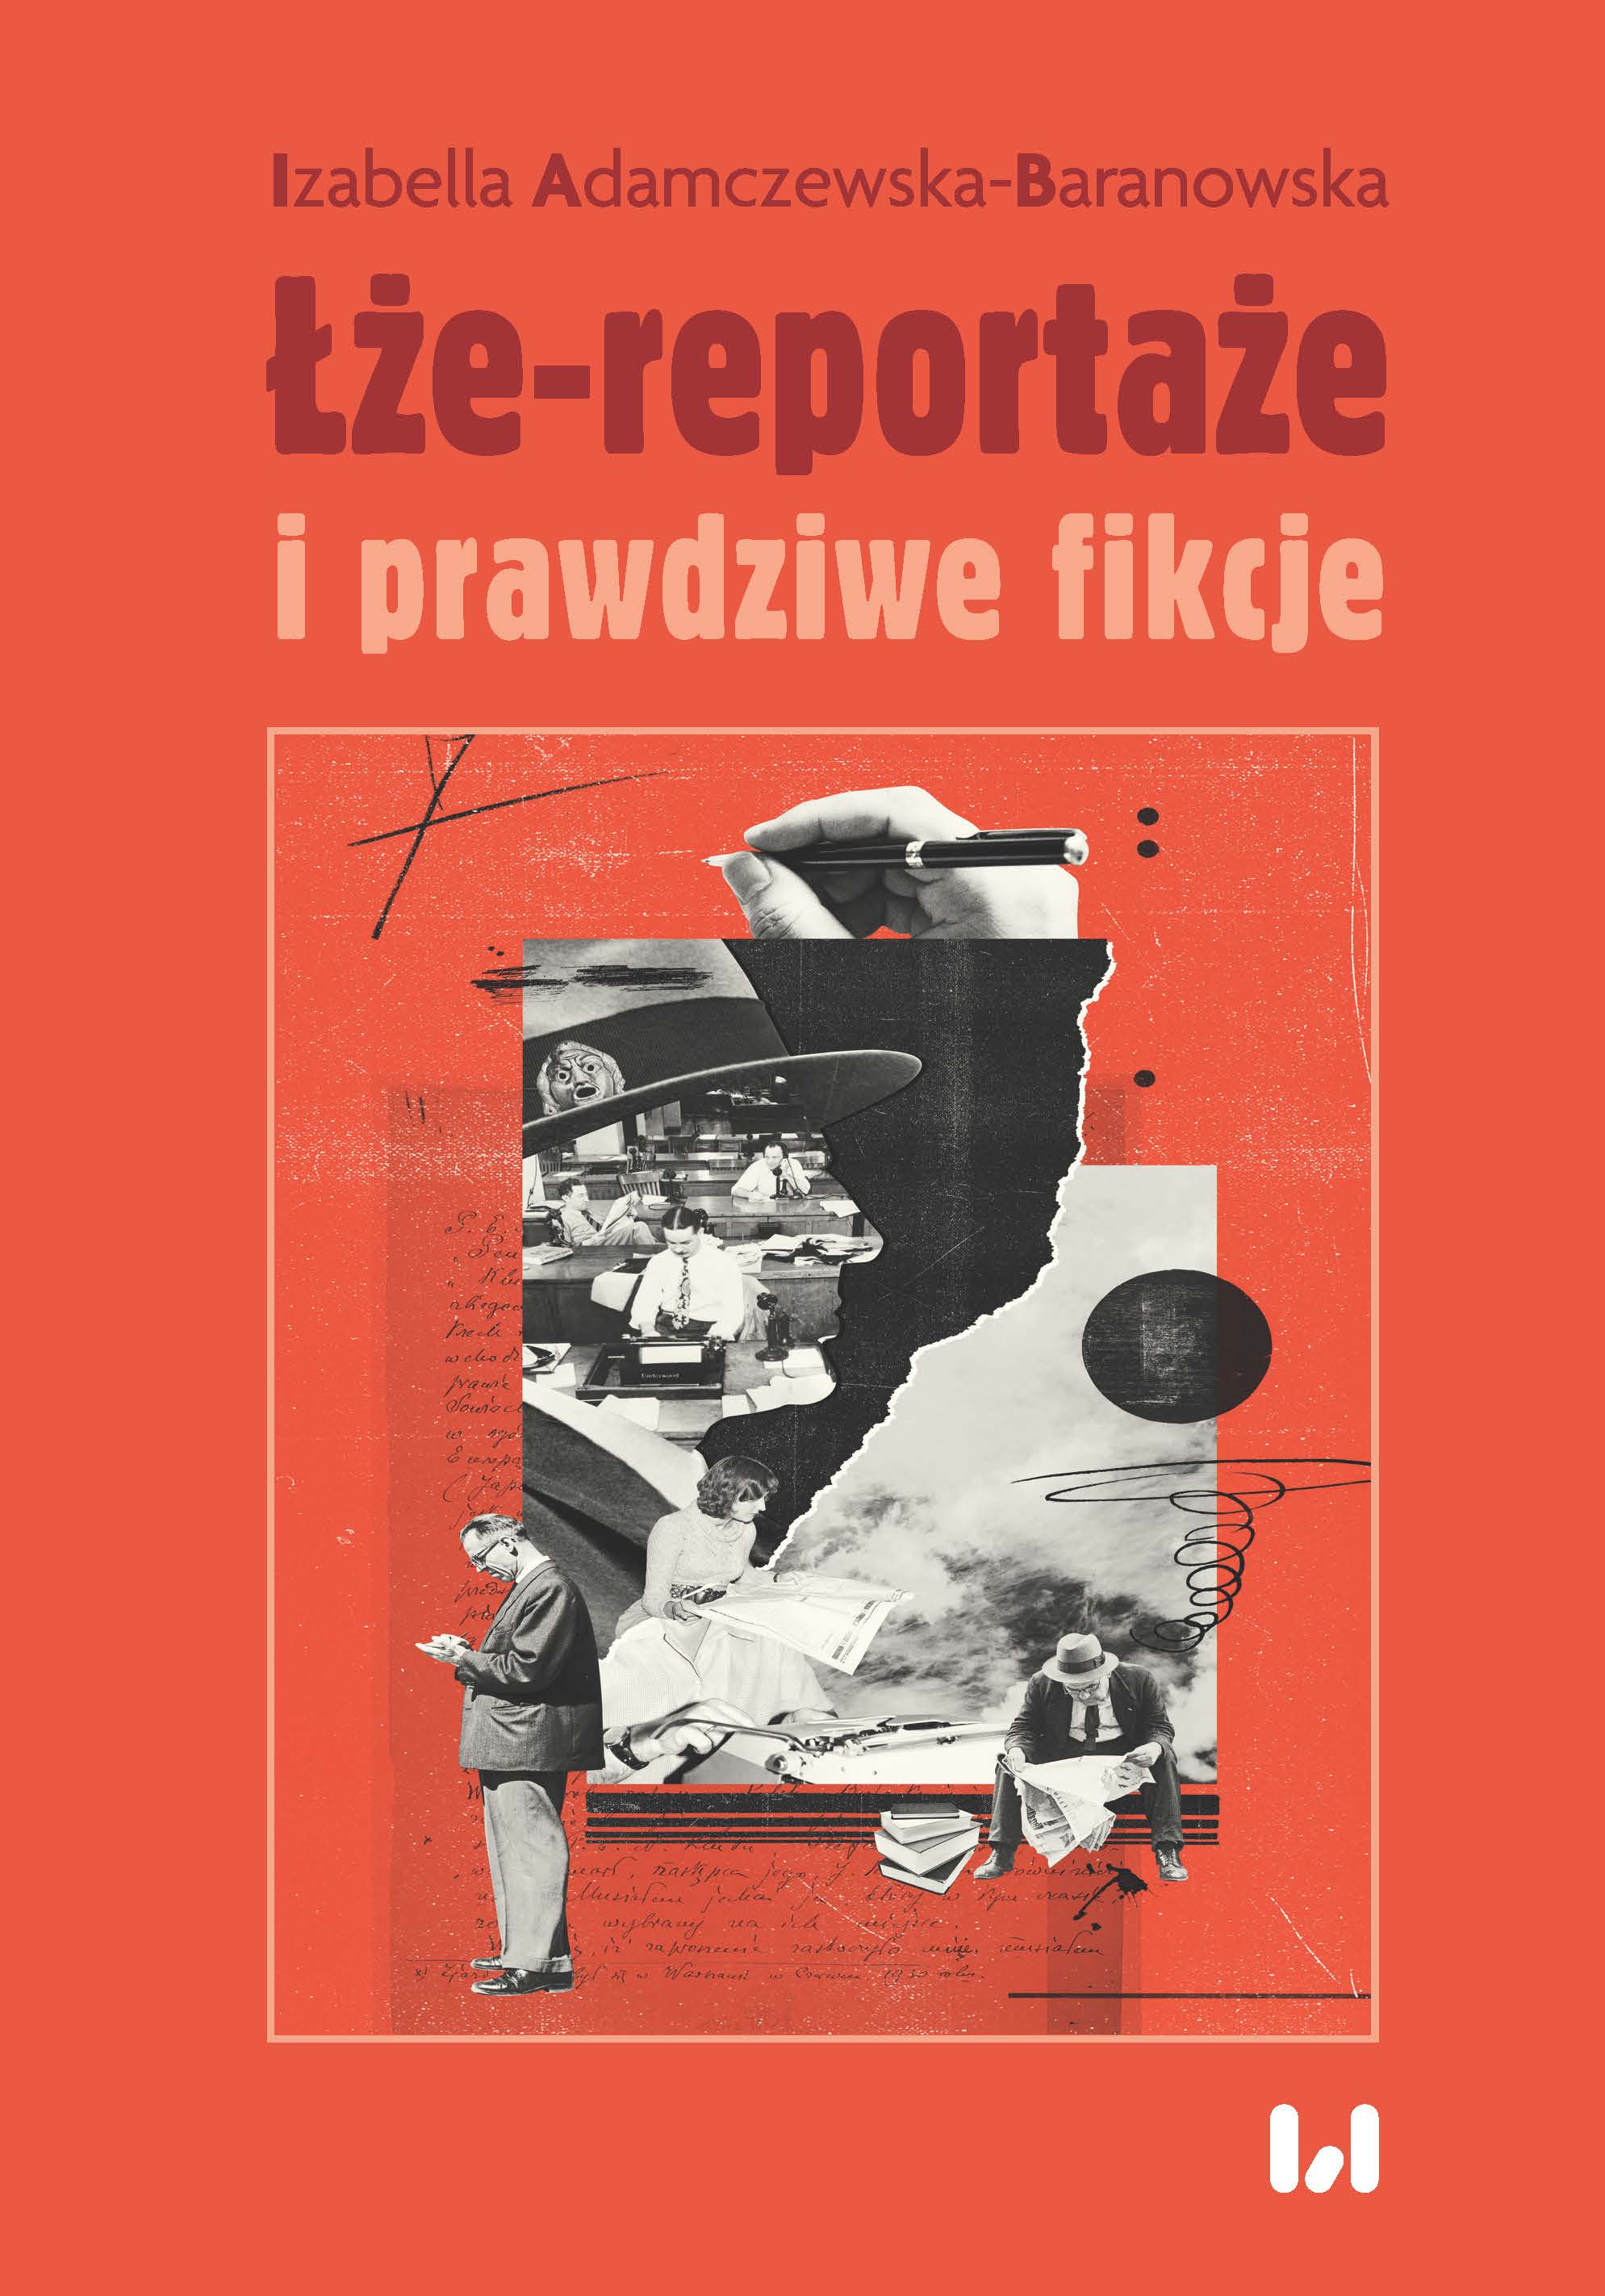 e-reporta-e-i-prawdziwe-fikcje-wydawnictwo-uniwersytetu-dzkiego